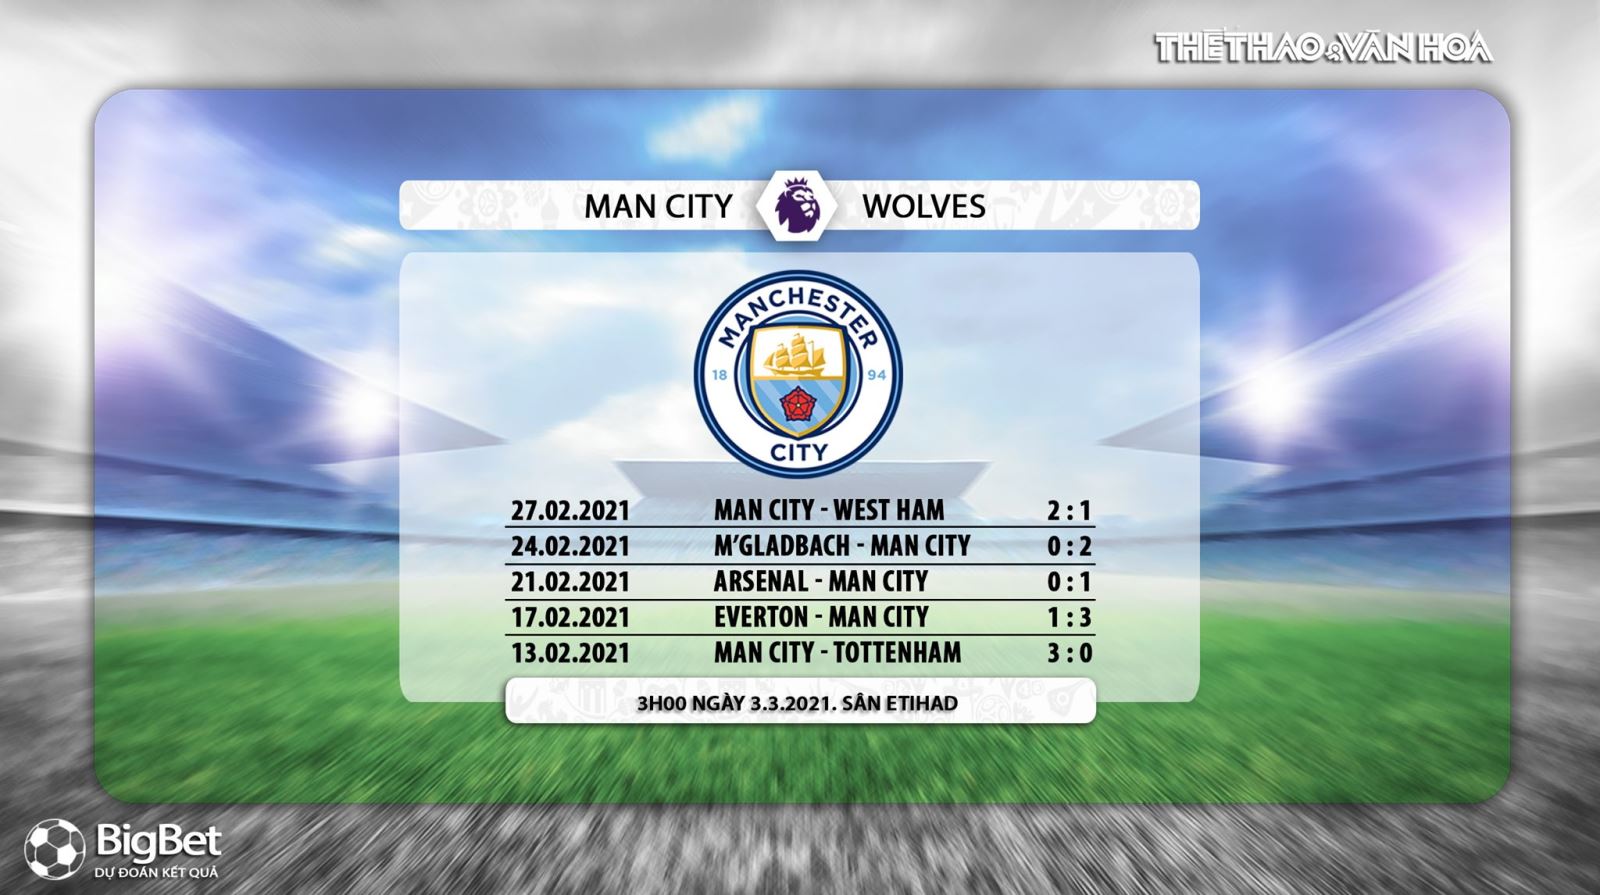 Keo nha cai, nhận định kết quả, Man City vs Wolves, K+, K+PM trực tiếp bóng đá Ngoại hạng Anh, Truc tiep bong da, Trực tiếp Man City vs Wolves, Kèo bóng đá Man City vs Wolves 